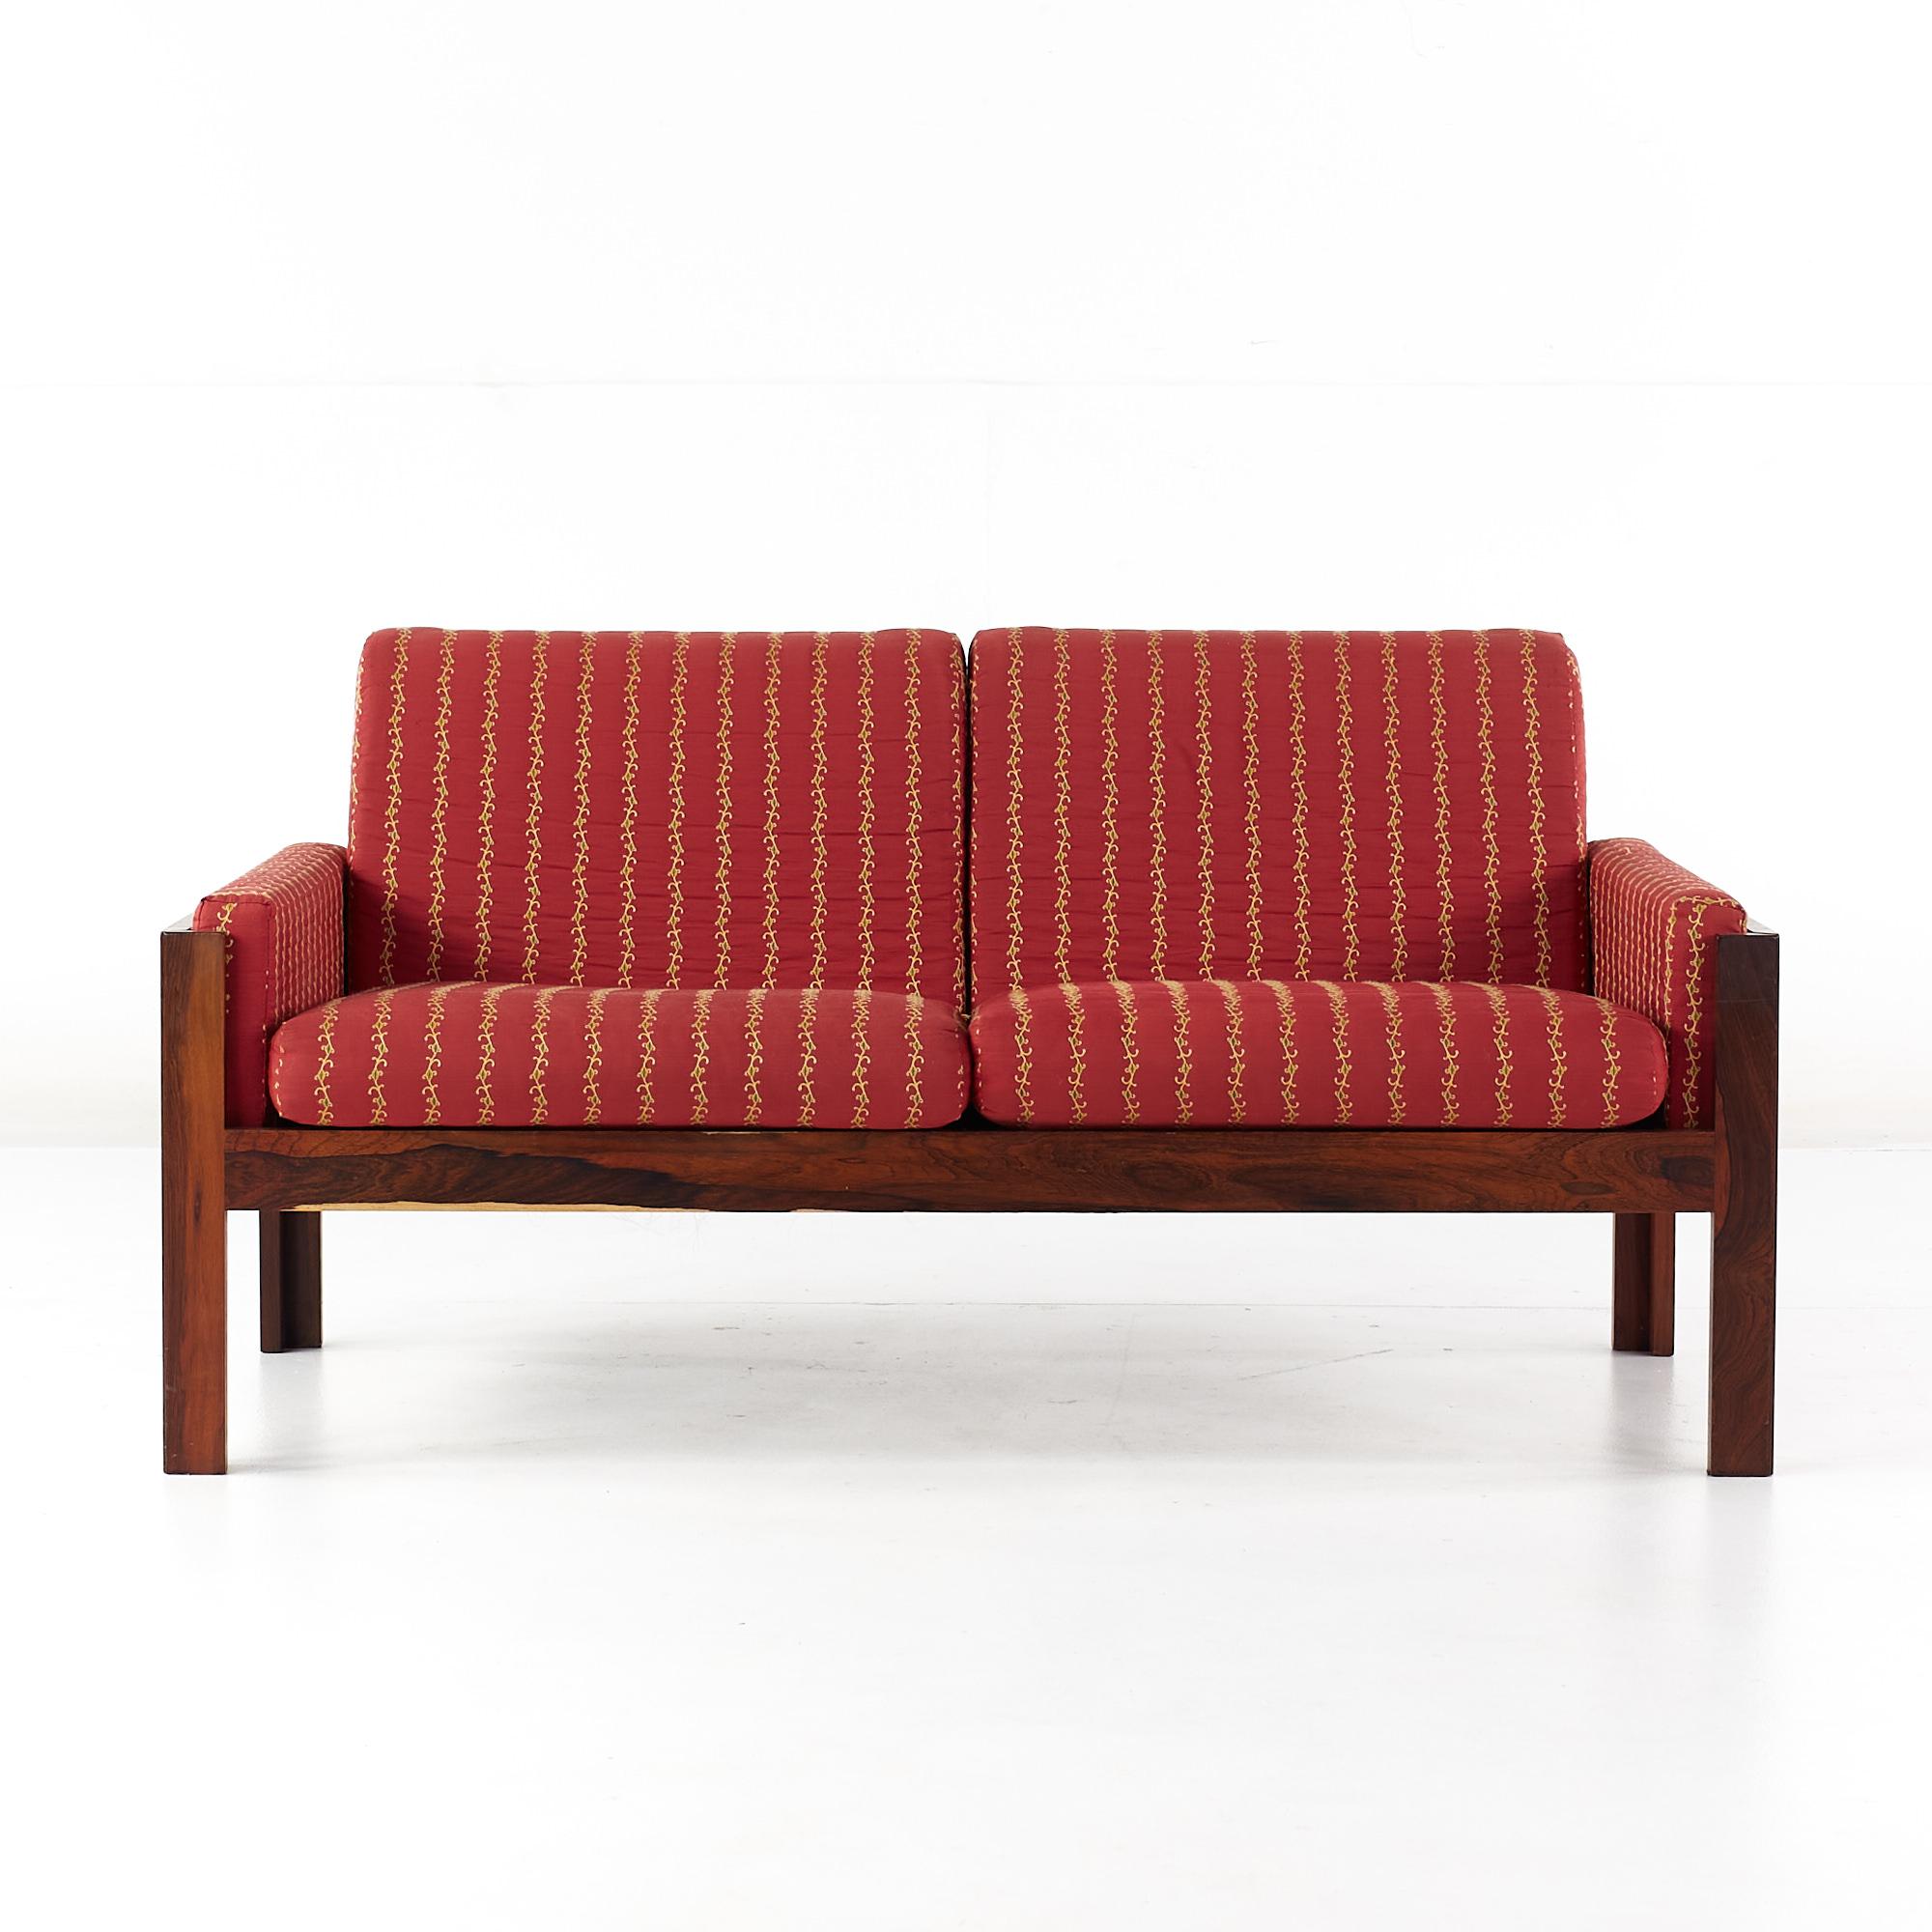 Canapé en bois de rose danois de style Arne Norell, datant du milieu du siècle dernier.

Ce canapé mesure : 51.25 de large x 27 de profond x 26 de haut.

Tous les meubles peuvent être obtenus dans ce que nous appelons un état vintage restauré.